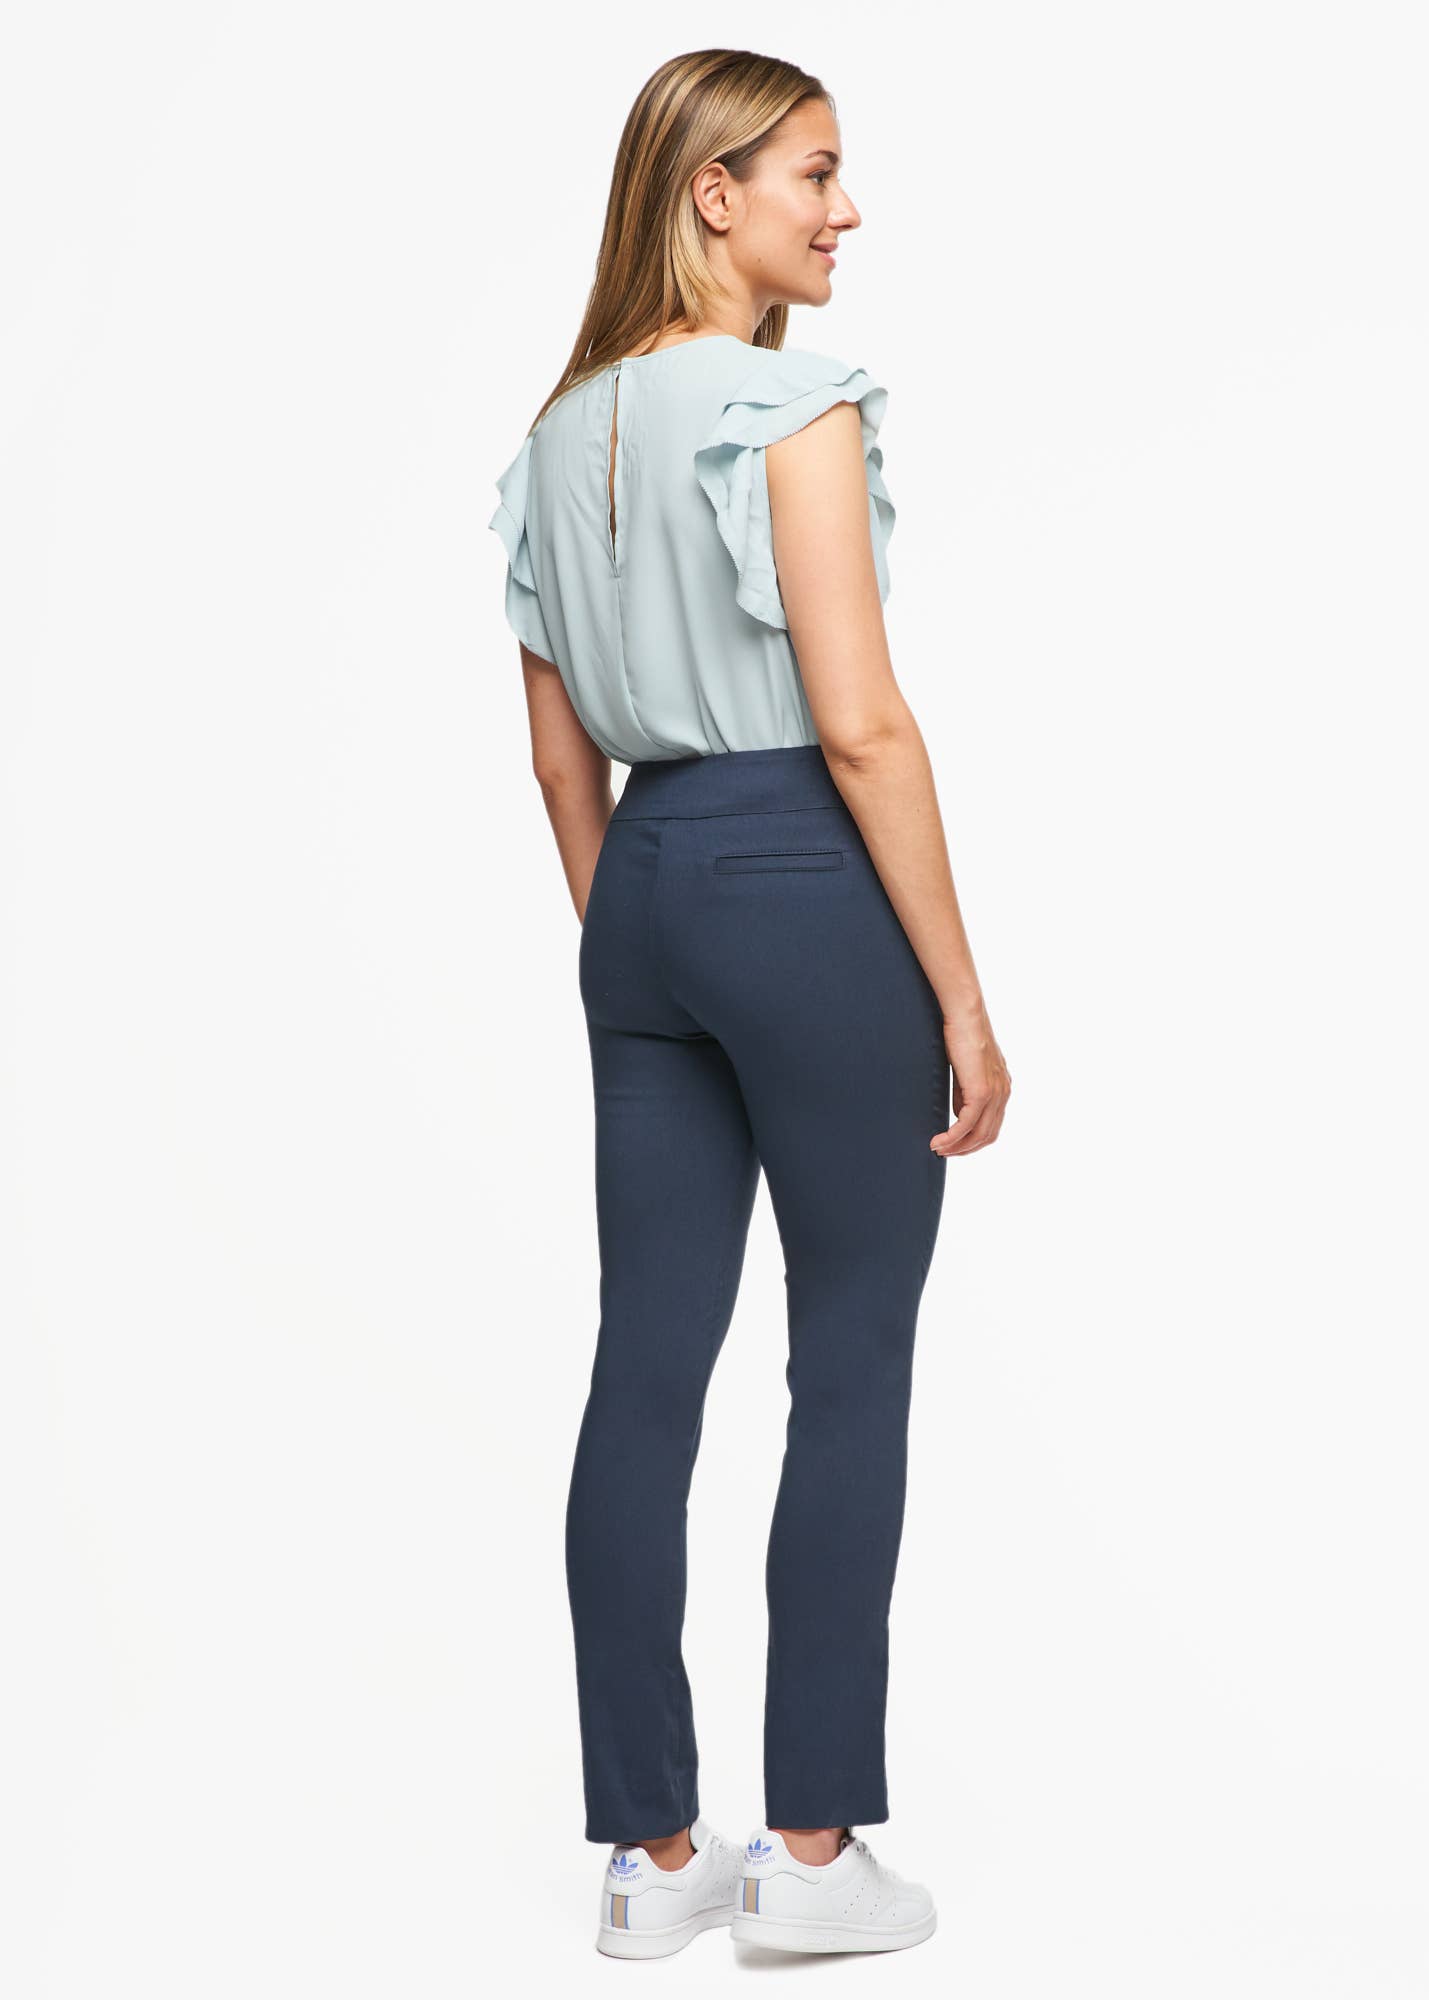 Loft Marisa Tweed Forever Navy Trousers Pants work career slacks poly  viscose -8 | eBay